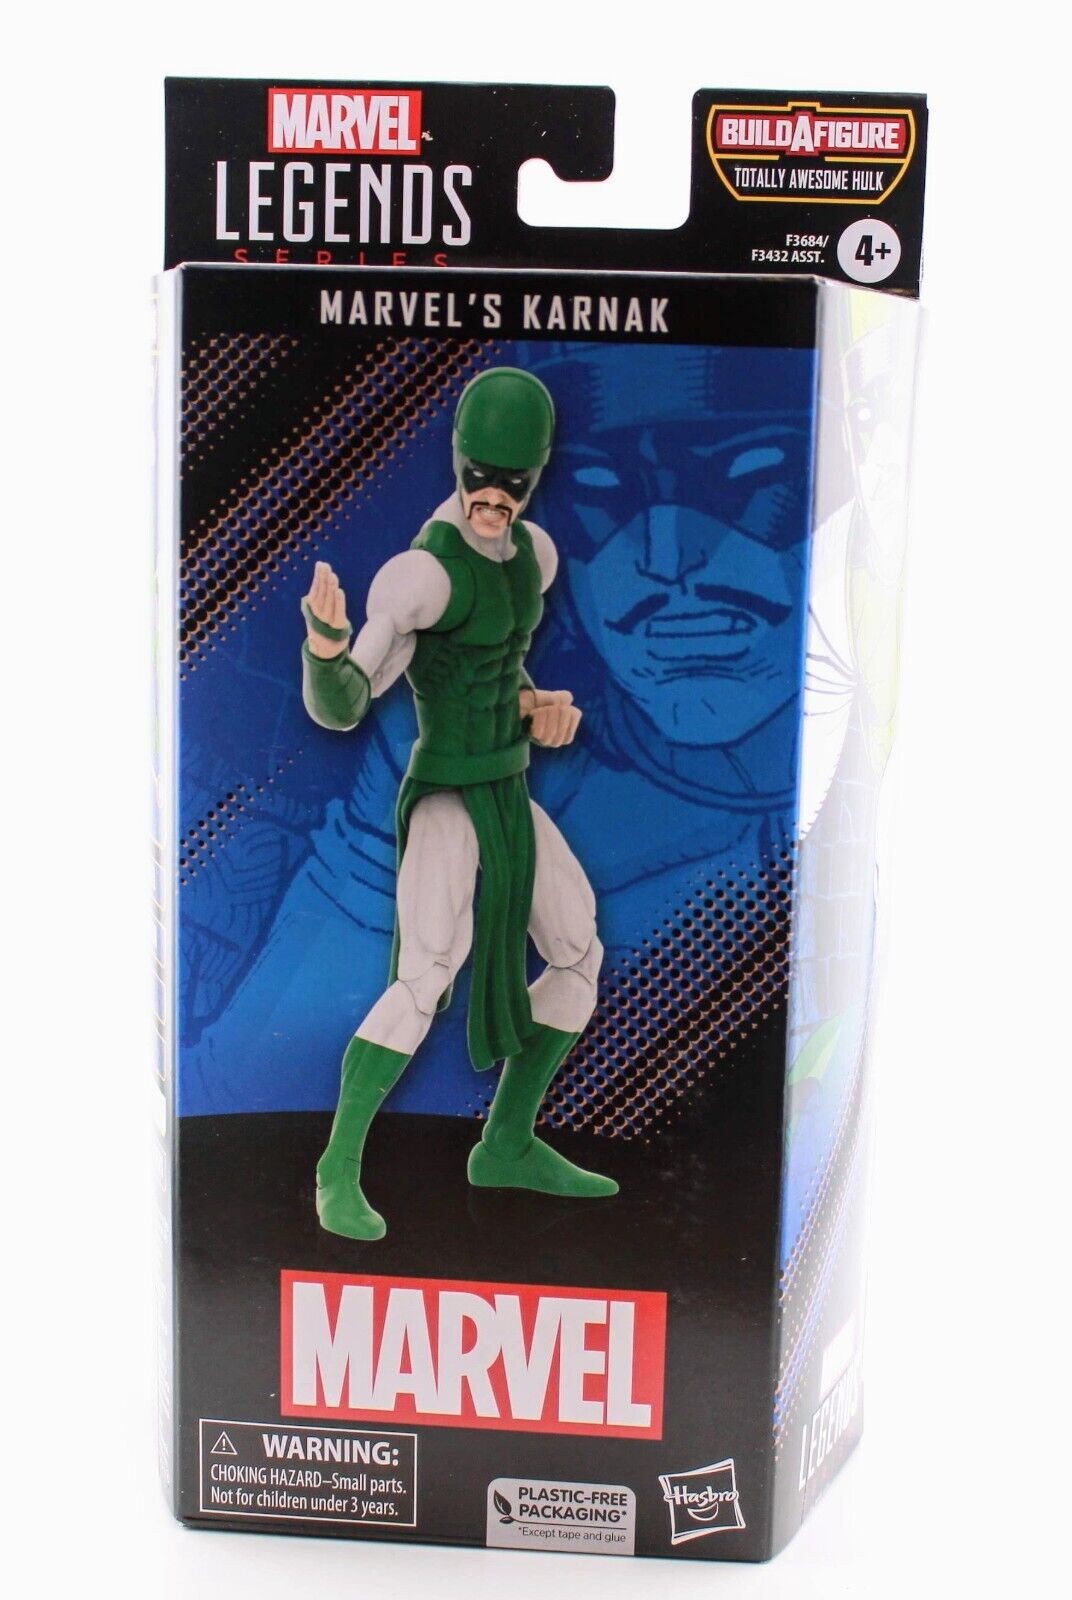 Marvel Legends - Karnak - Awesome Hulk BAF - The Marvels Wave